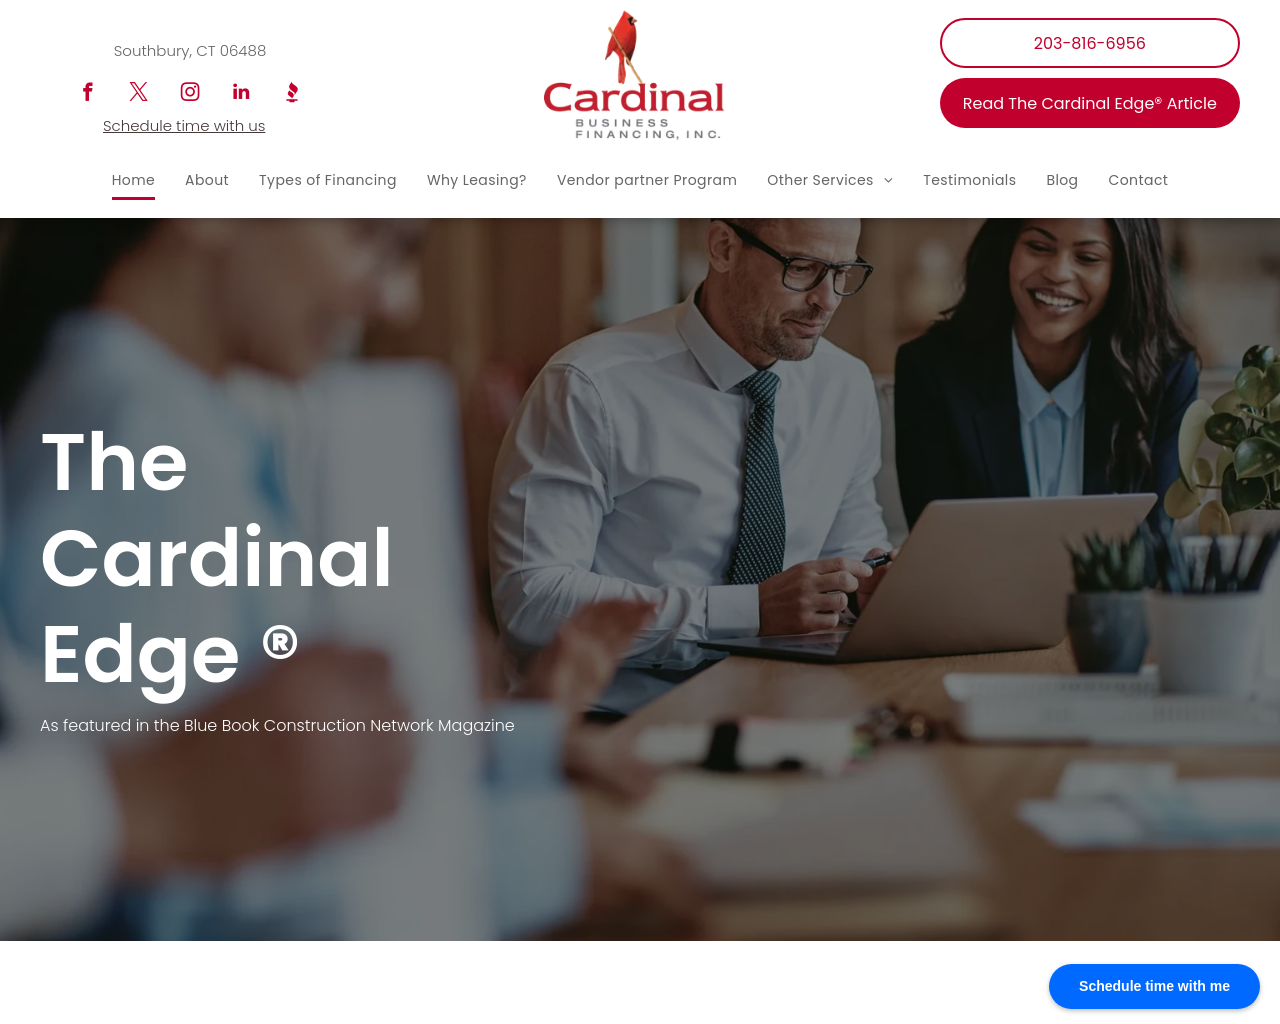 cardinalbusinessfinancing.com